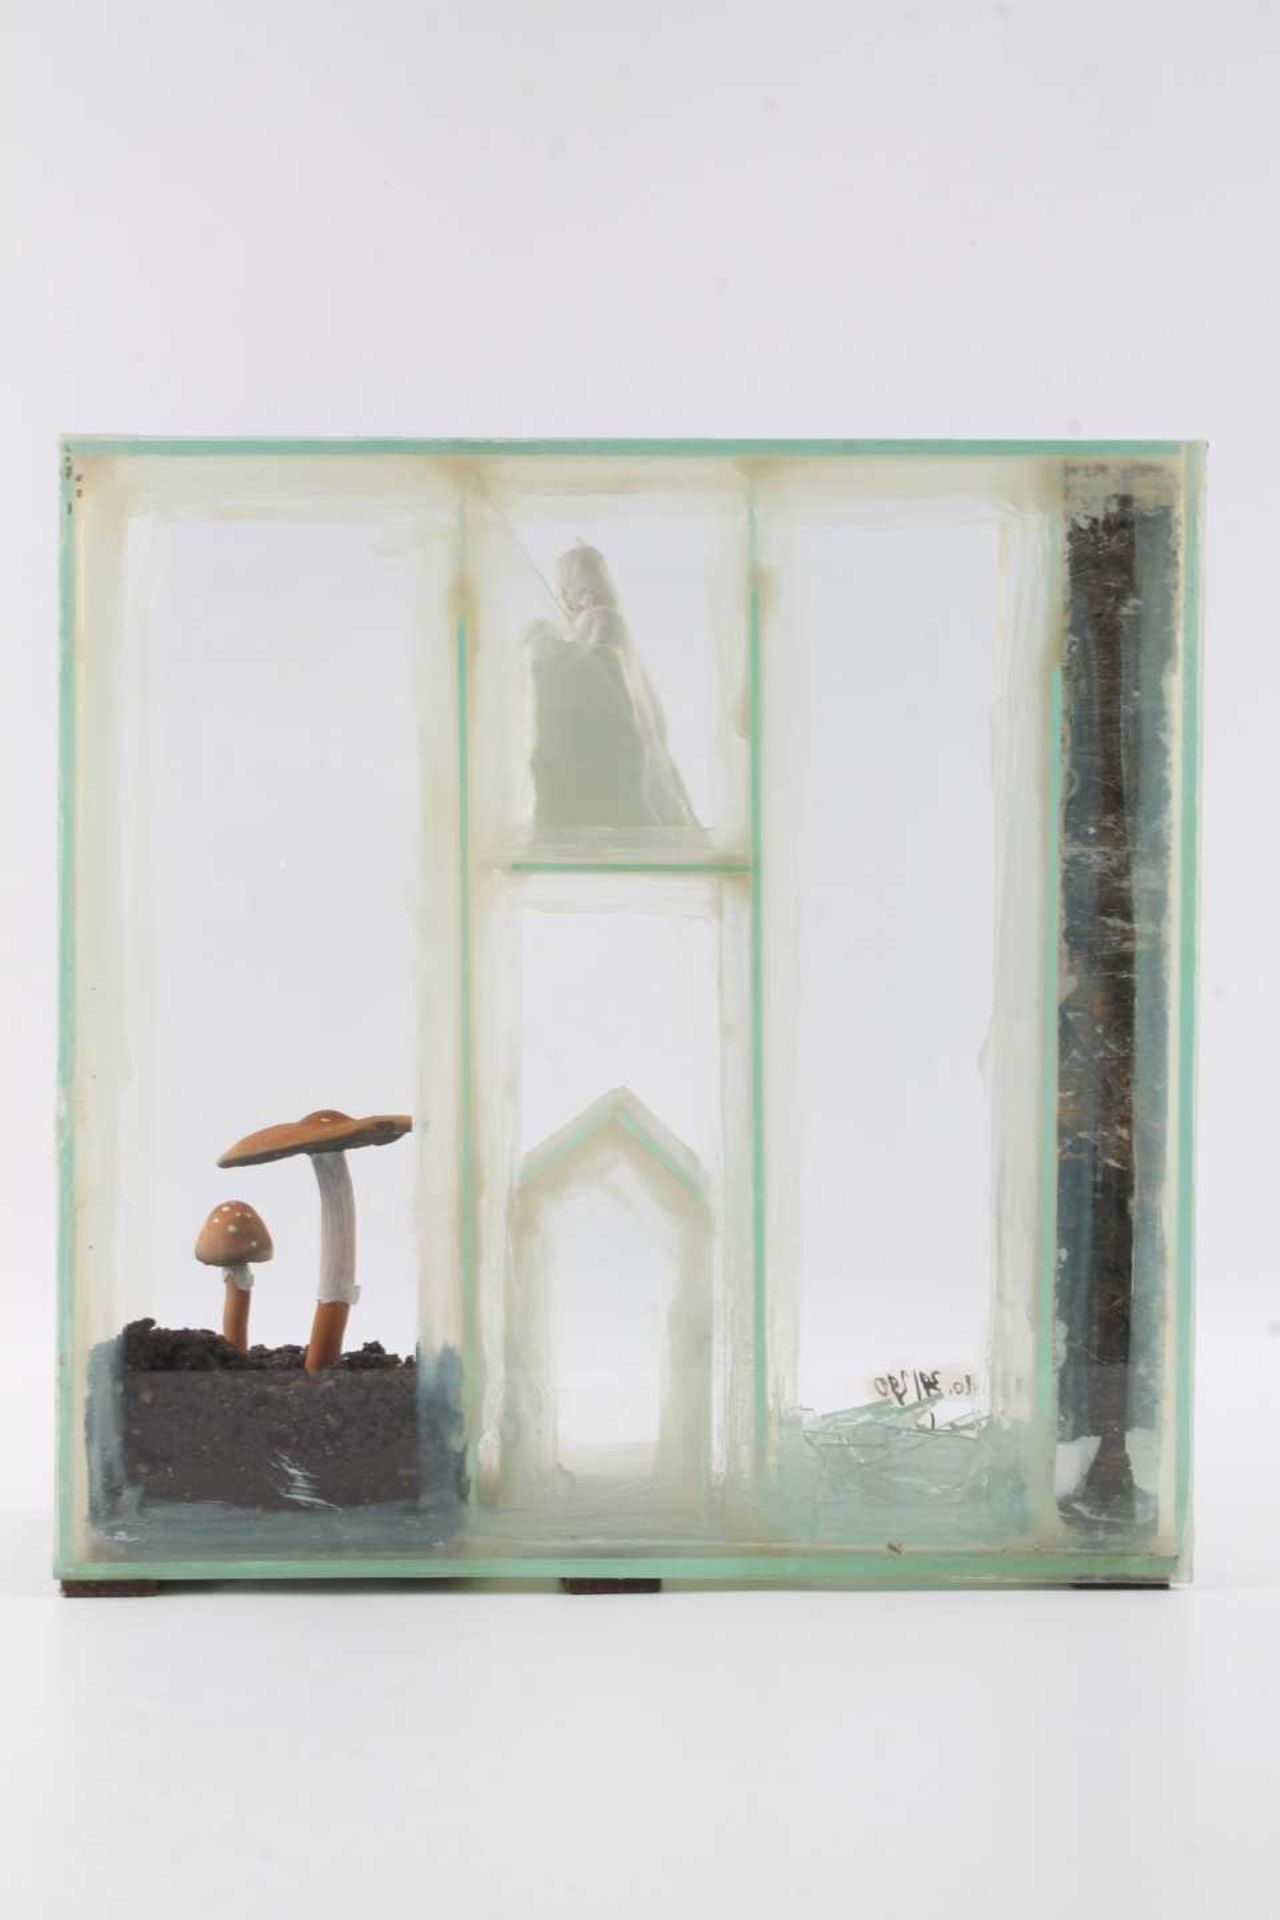 American Box Skulptur von 1997 - u.a. Roxy Paine (*1966 USA), Clemens Weiss (*1955 deutsch), - Bild 6 aus 6